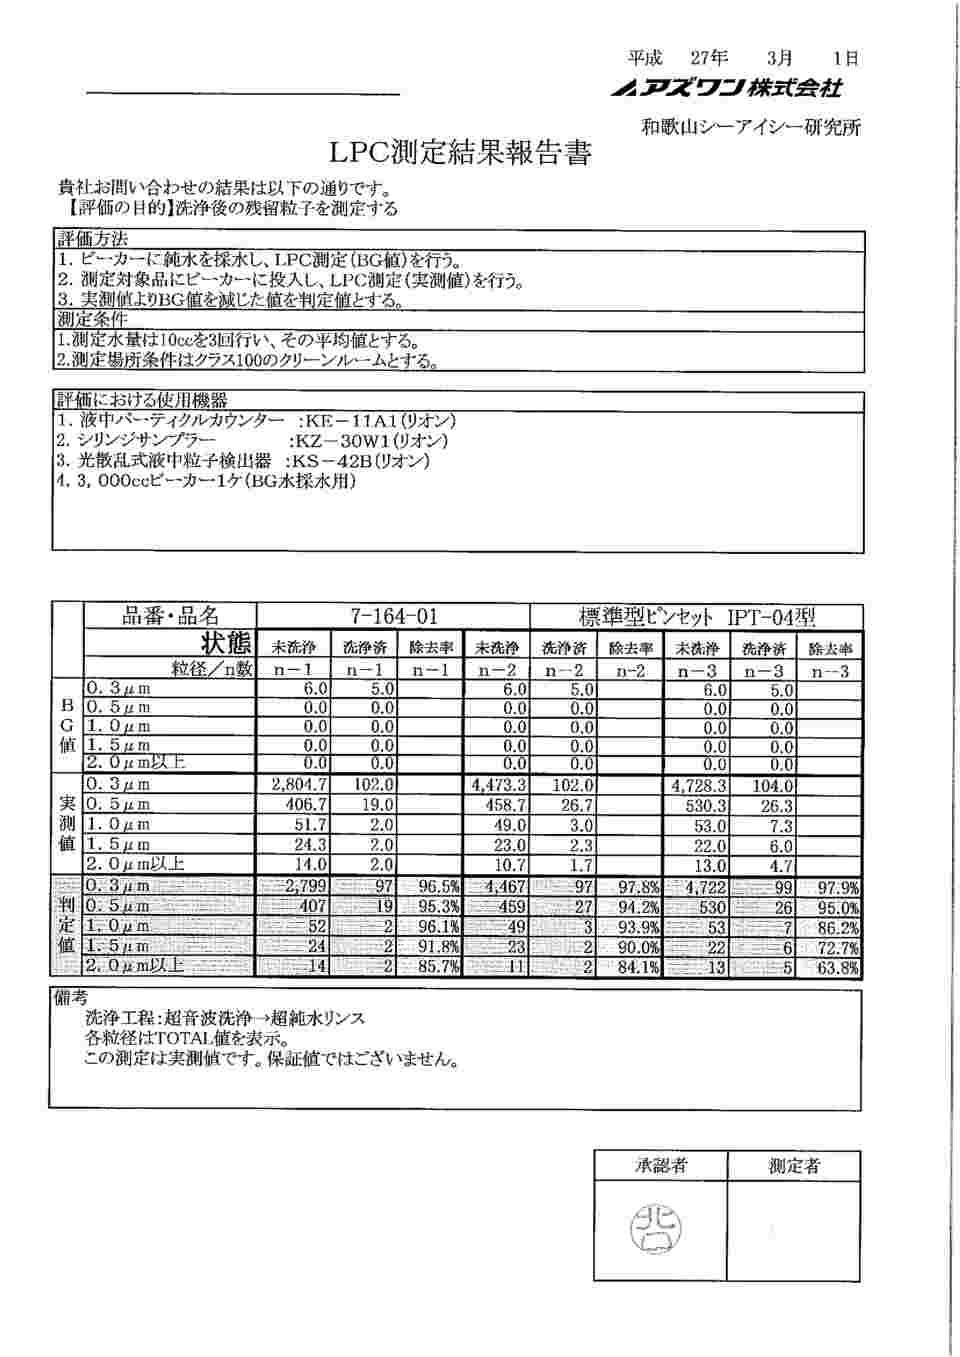 7-164-01 標準型ピンセット 細 ステンレス IPT-04 【AXEL】 アズワン